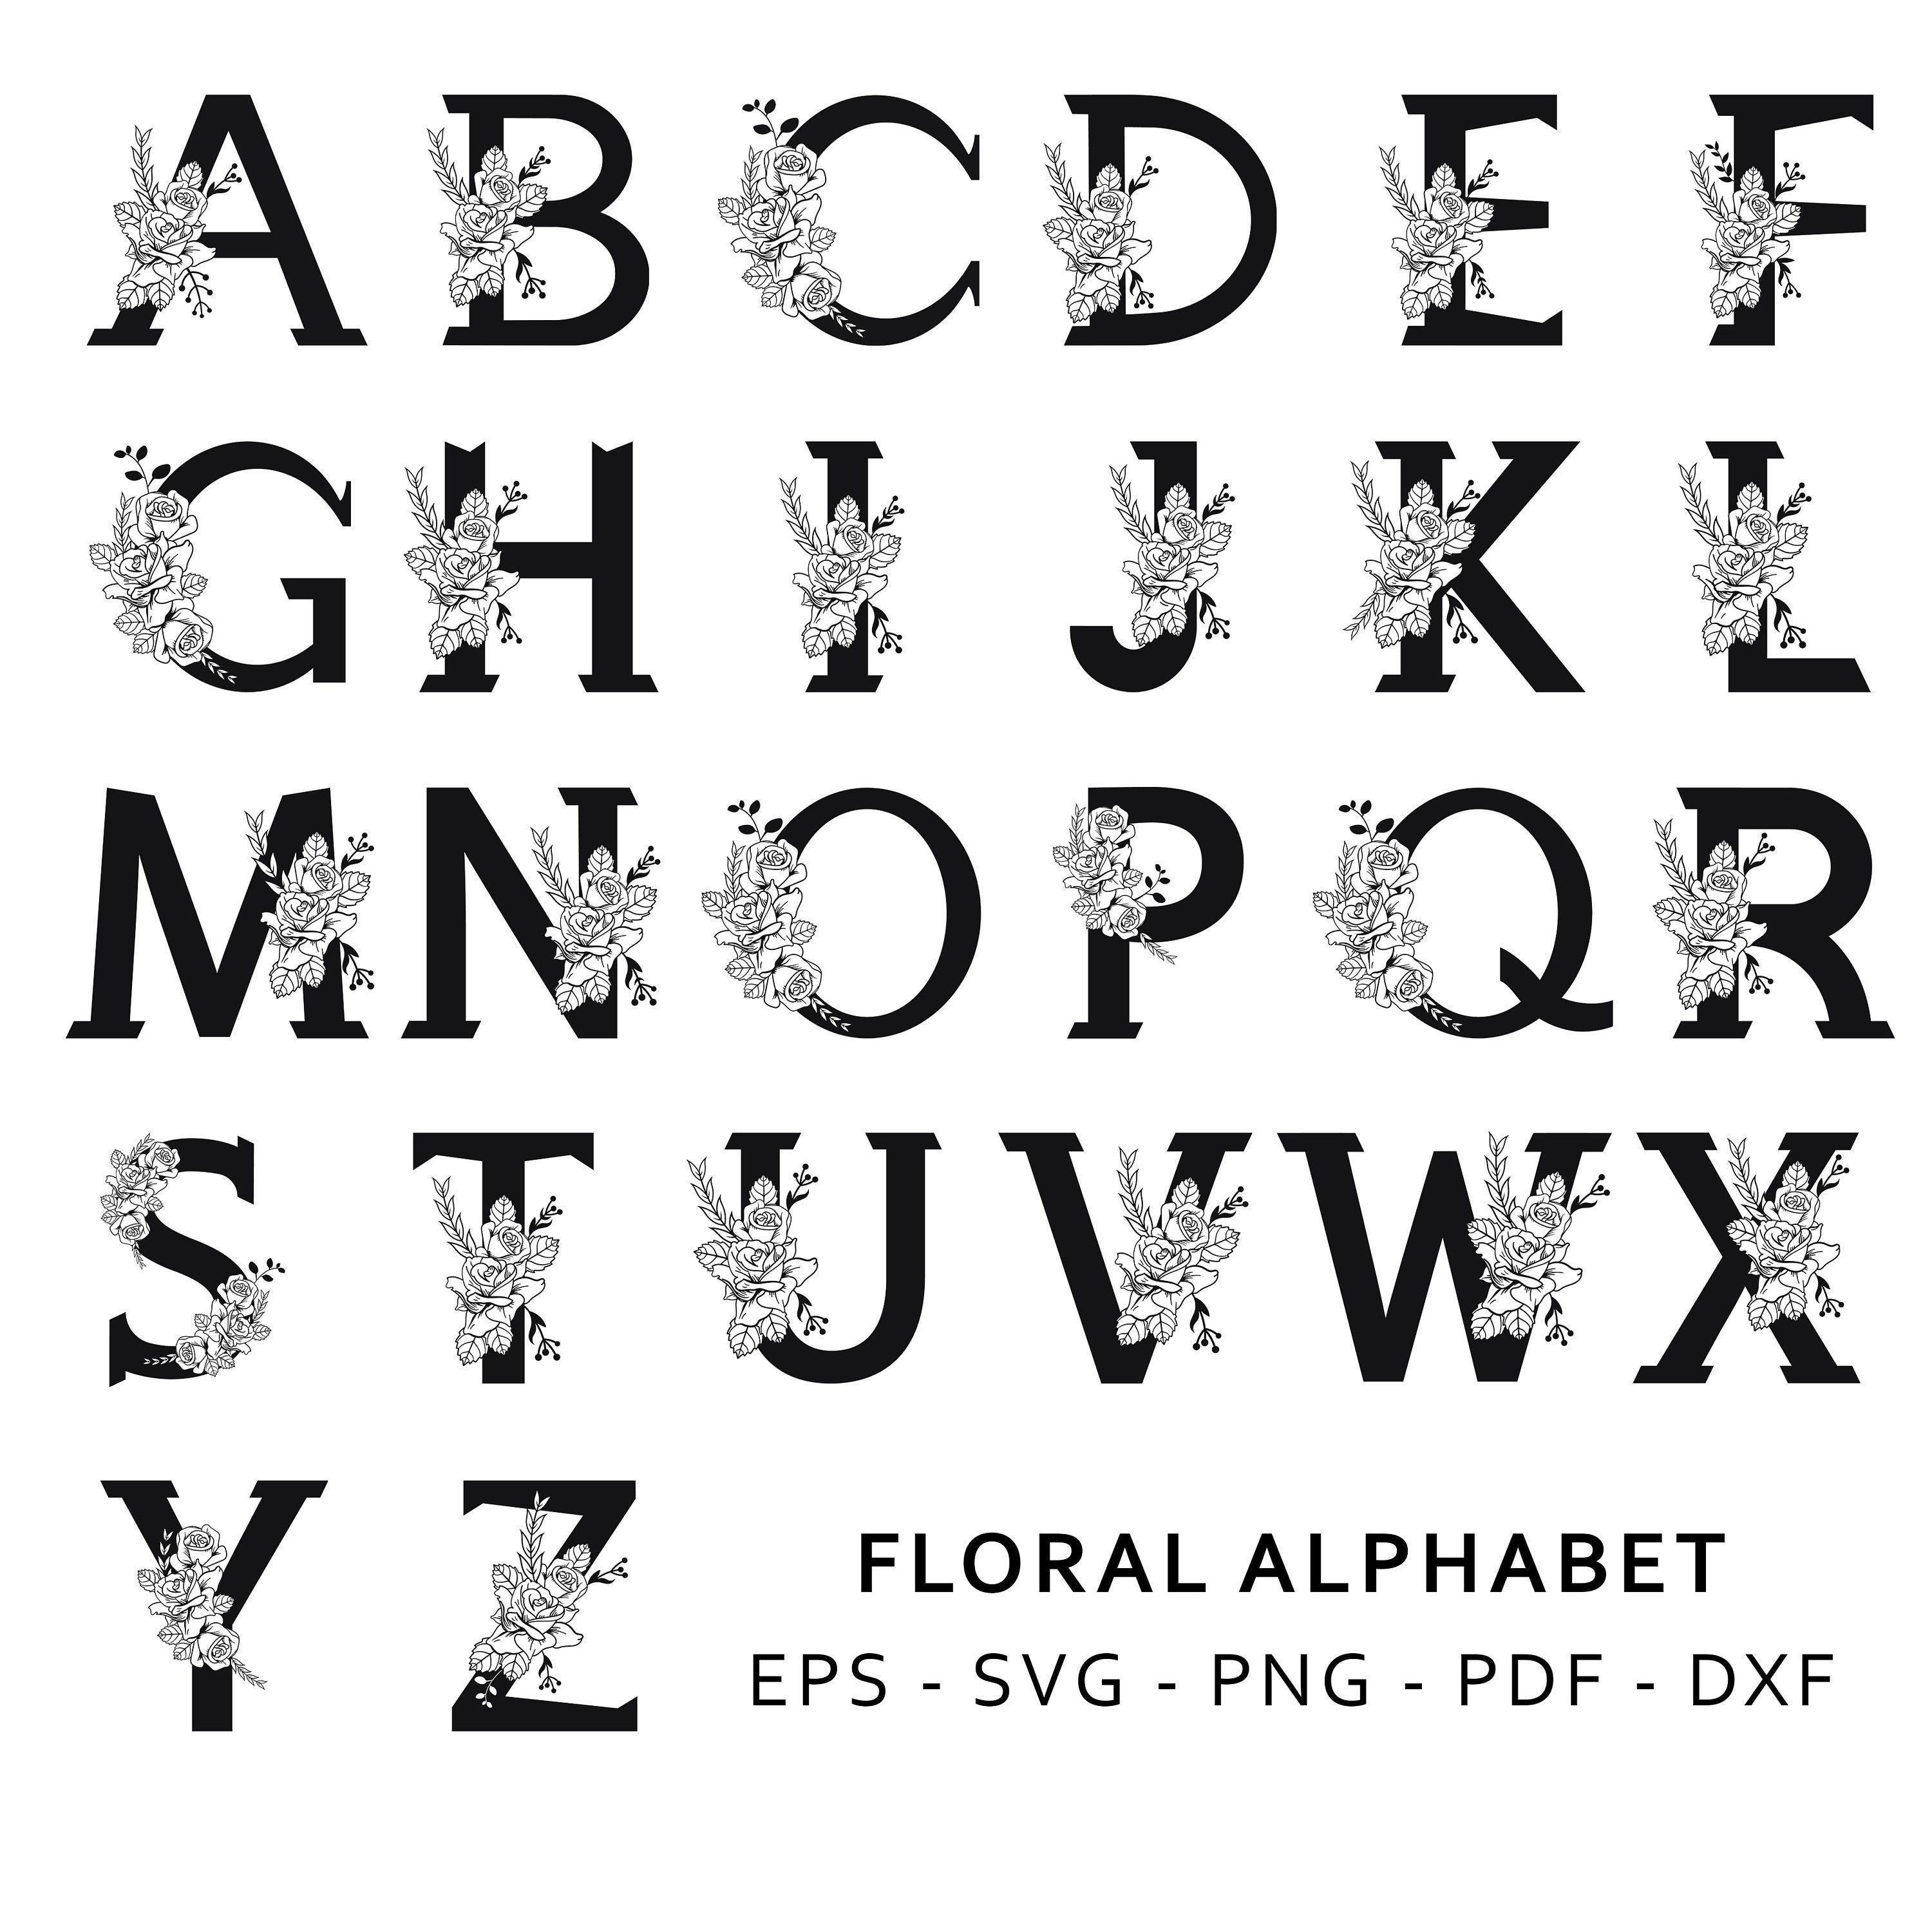 Download Floral Alphabet SVG Bundle SVG Letters with Flowers | Etsy